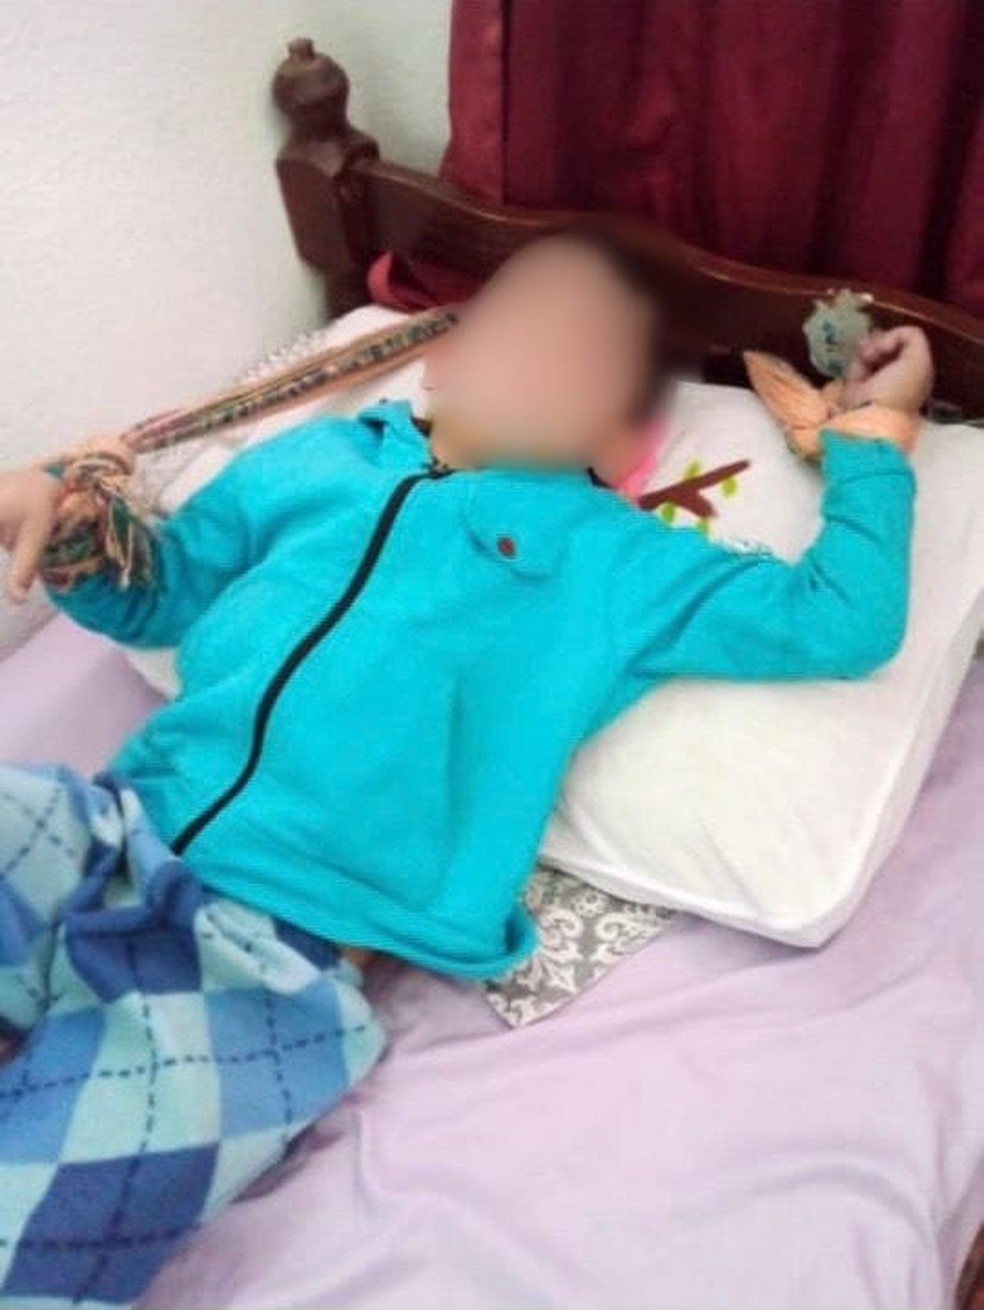 Mãe e padrasto são presos suspeitos de amarrar e torturar criança de 6 anos em Canoas | Rio Grande do Sul | G1